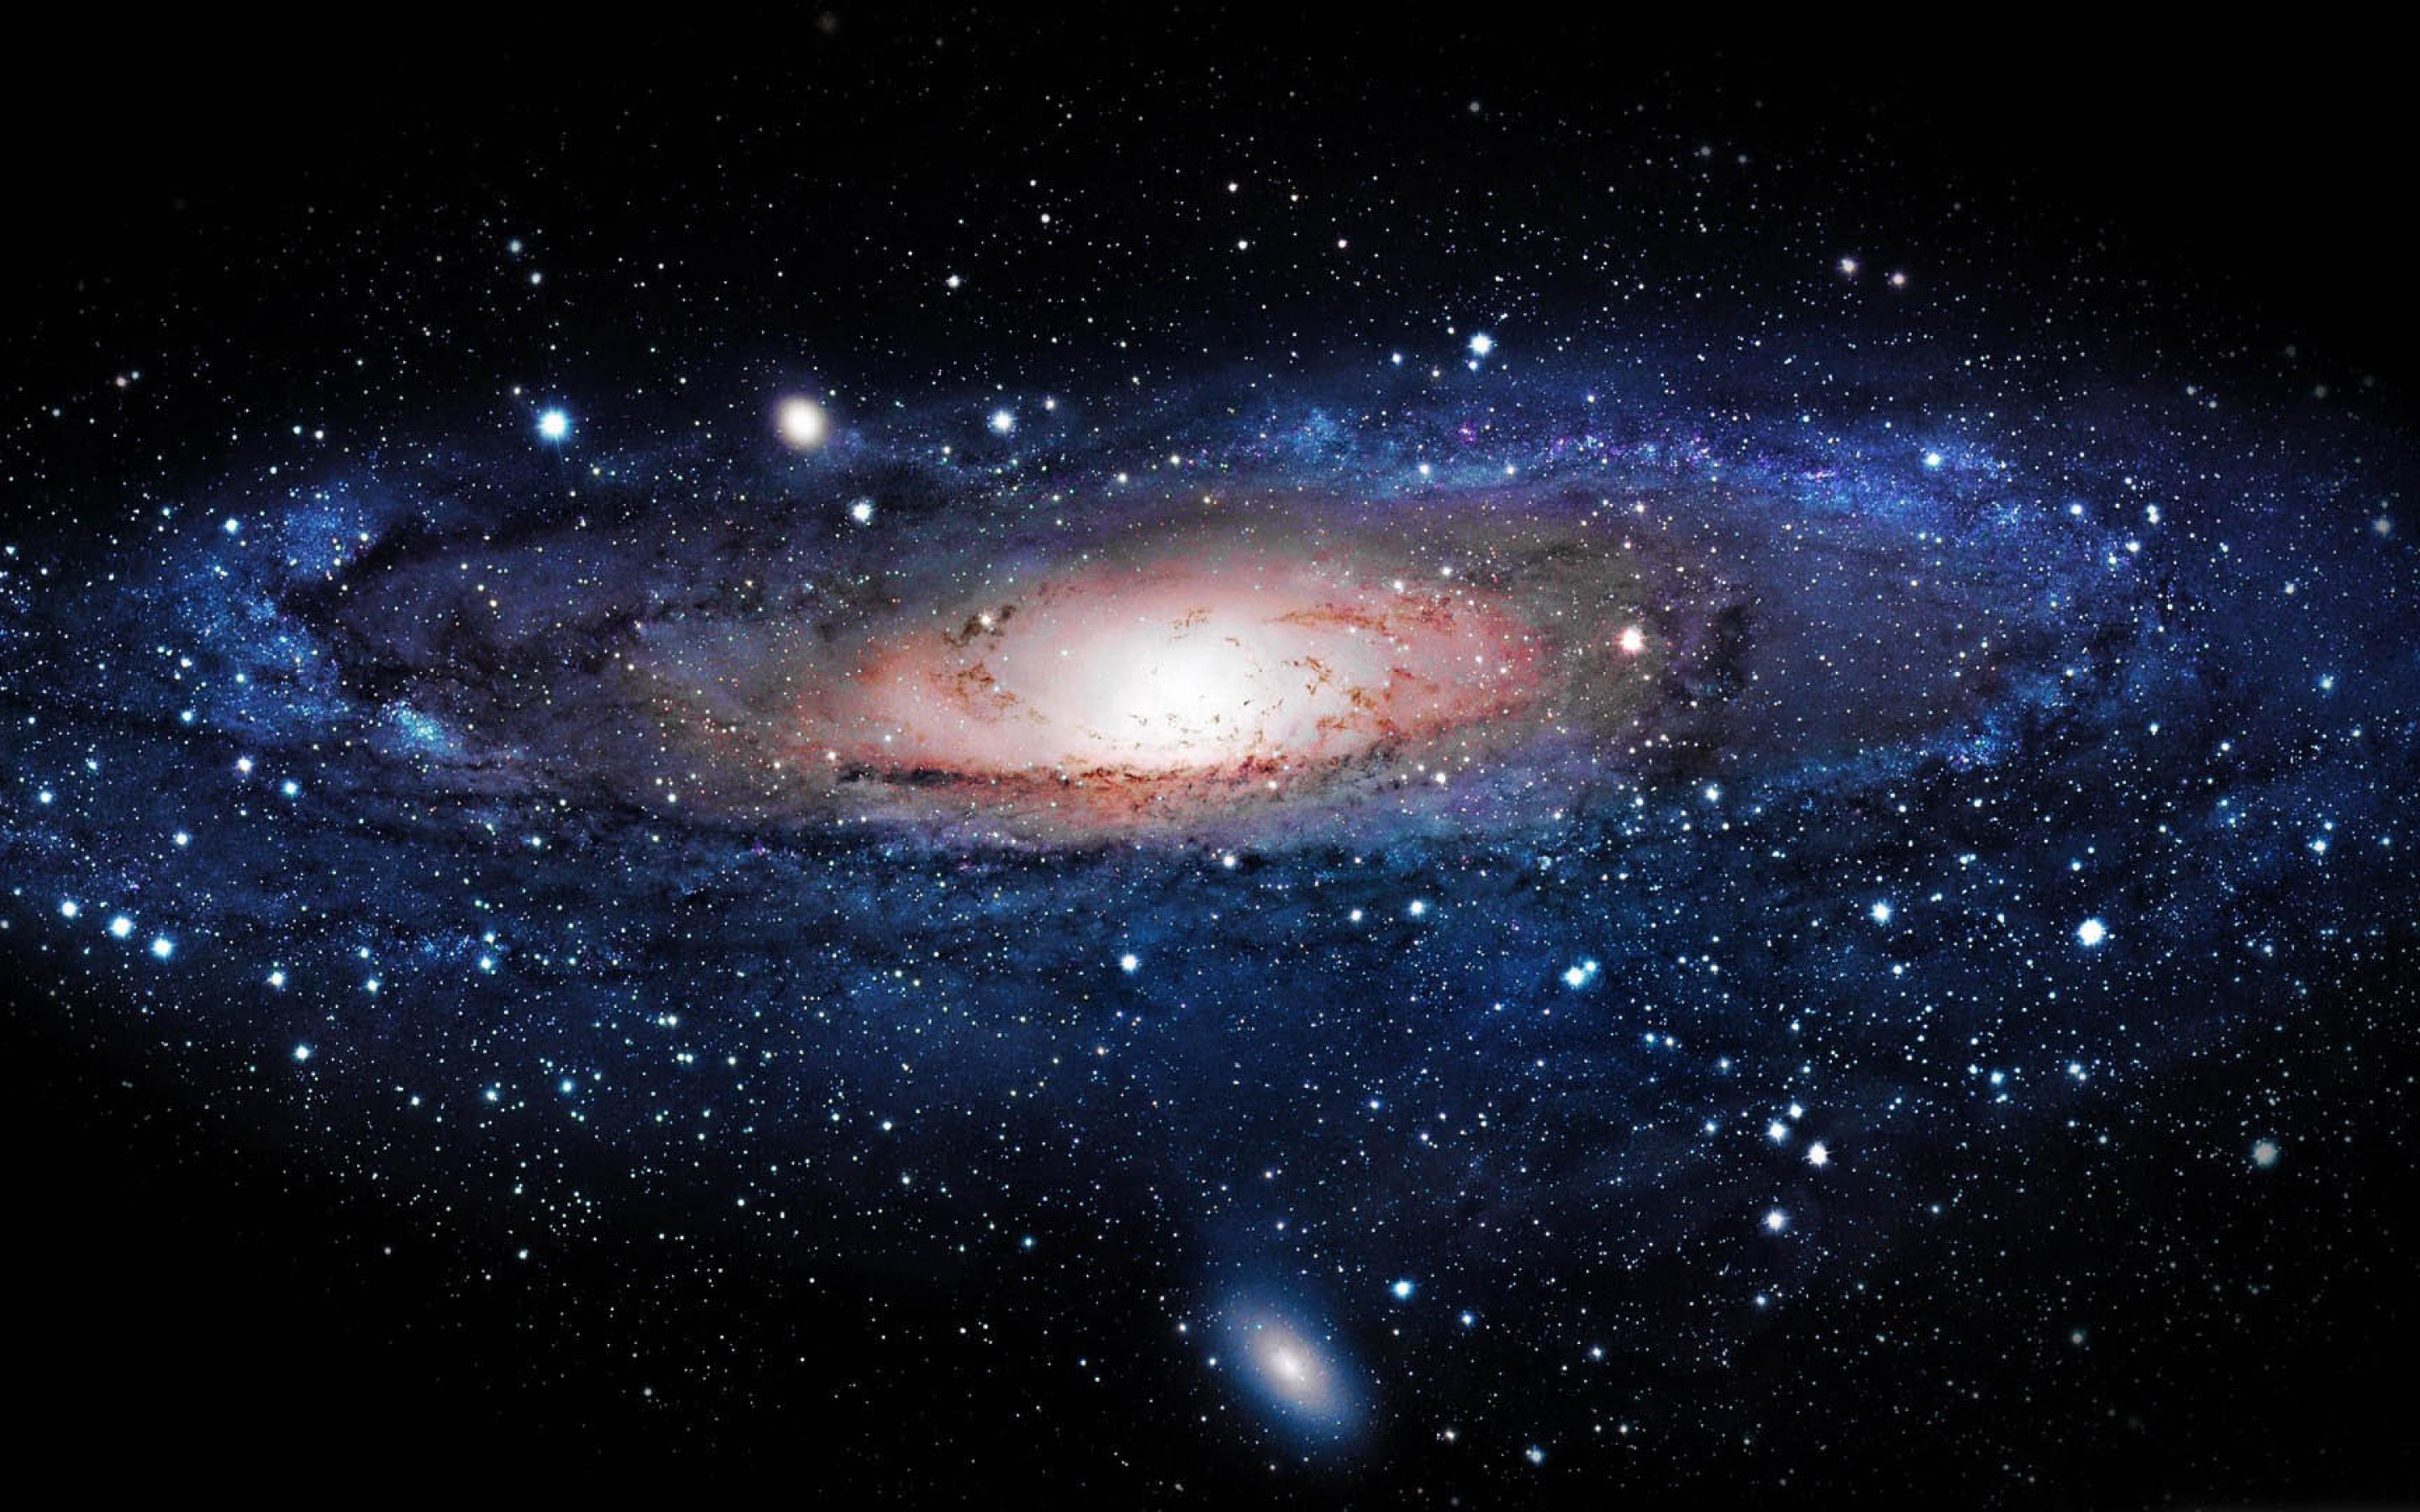 Thiên hà là nguồn cảm hứng bất tận cho những người yêu khoa học. Hãy đón xem những hình ảnh này để hiểu hơn về tính phức tạp và kỳ diệu của thế giới vũ trụ này. Chắc chắn bạn sẽ bị khuất phục bởi vẻ đẹp tuyệt vời của thiên hà.